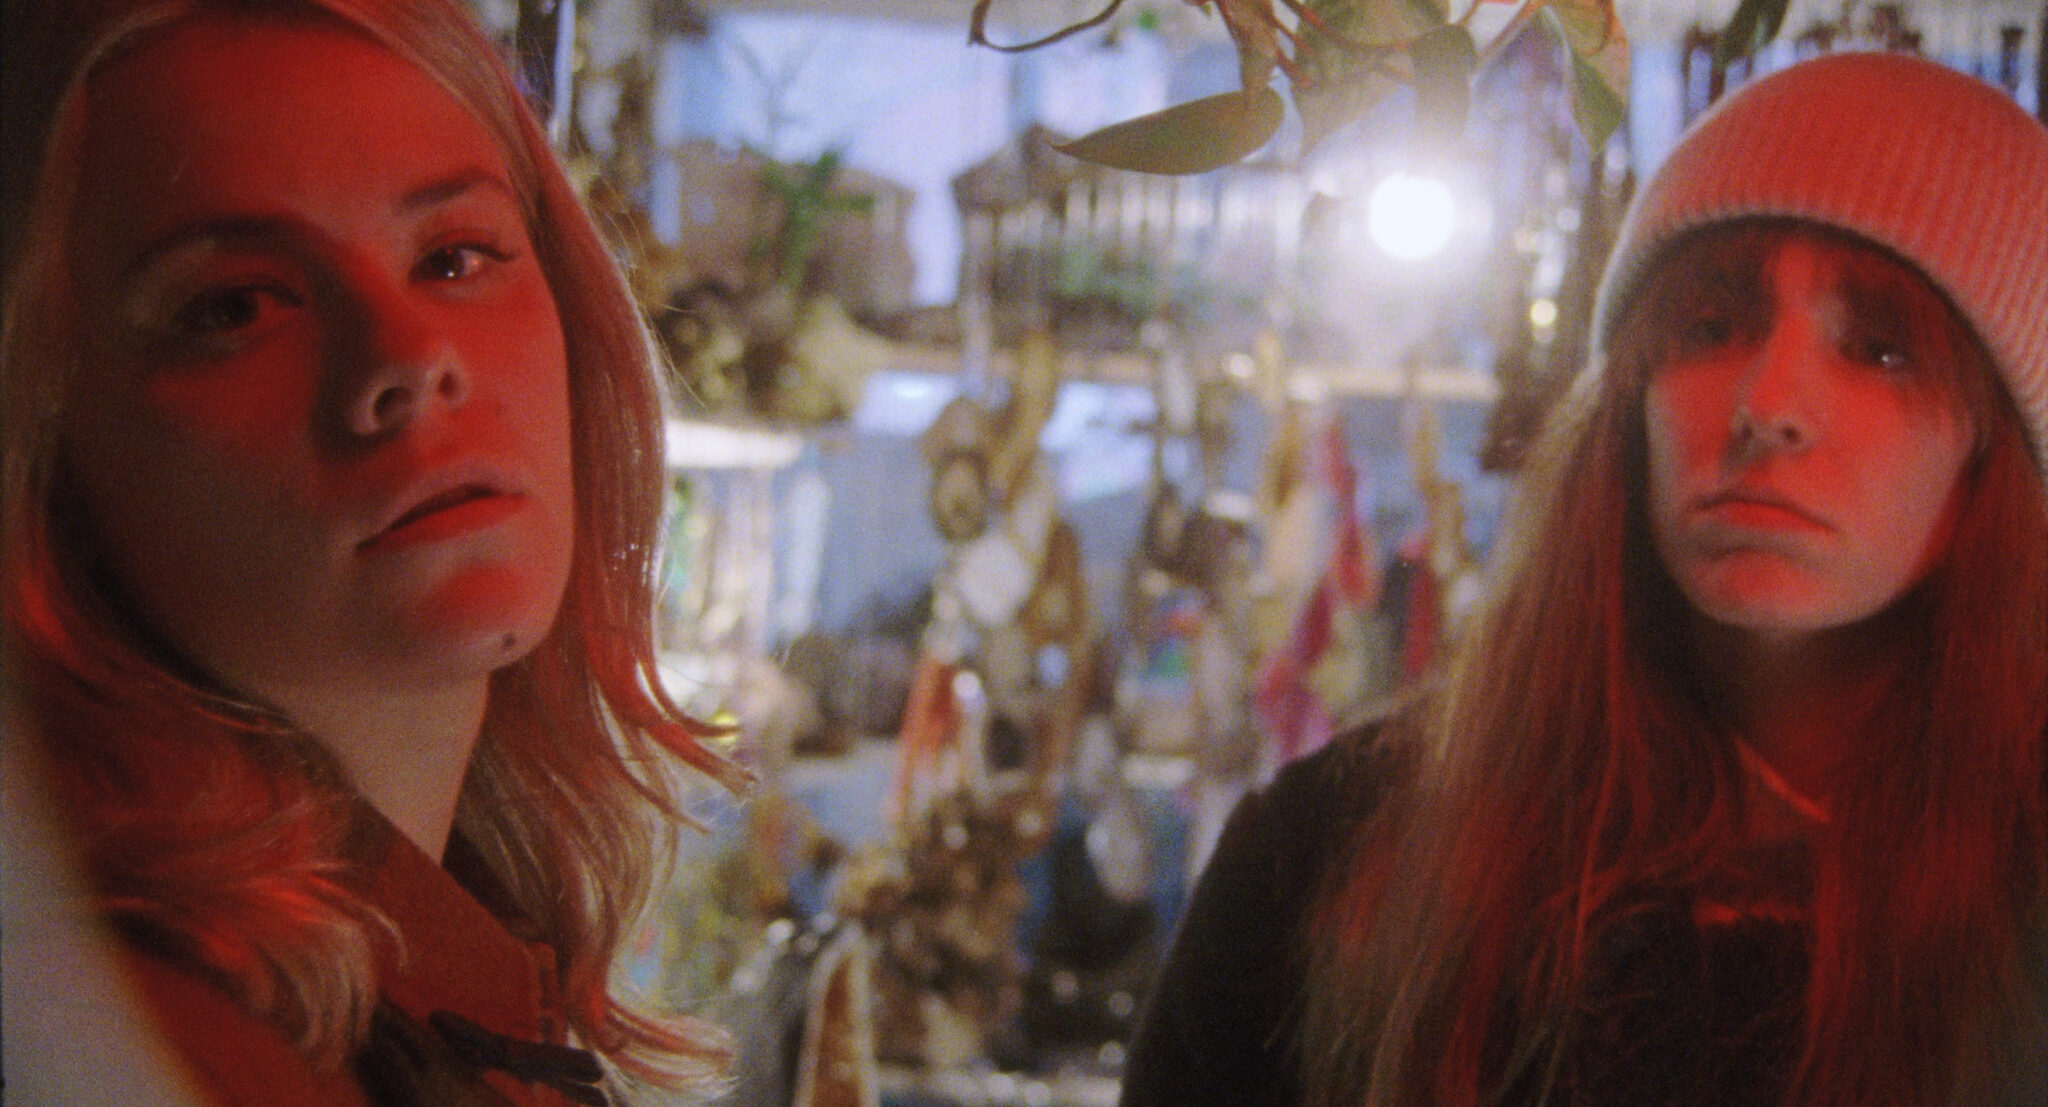 Dasha Nekrasova und Madeline Quinn stehen roterleuchtet in einem Raum. Im verschwommenen Hintergrund leuchtet eine Glühbirne und man sieht einige goldfarbene Gegenstände.